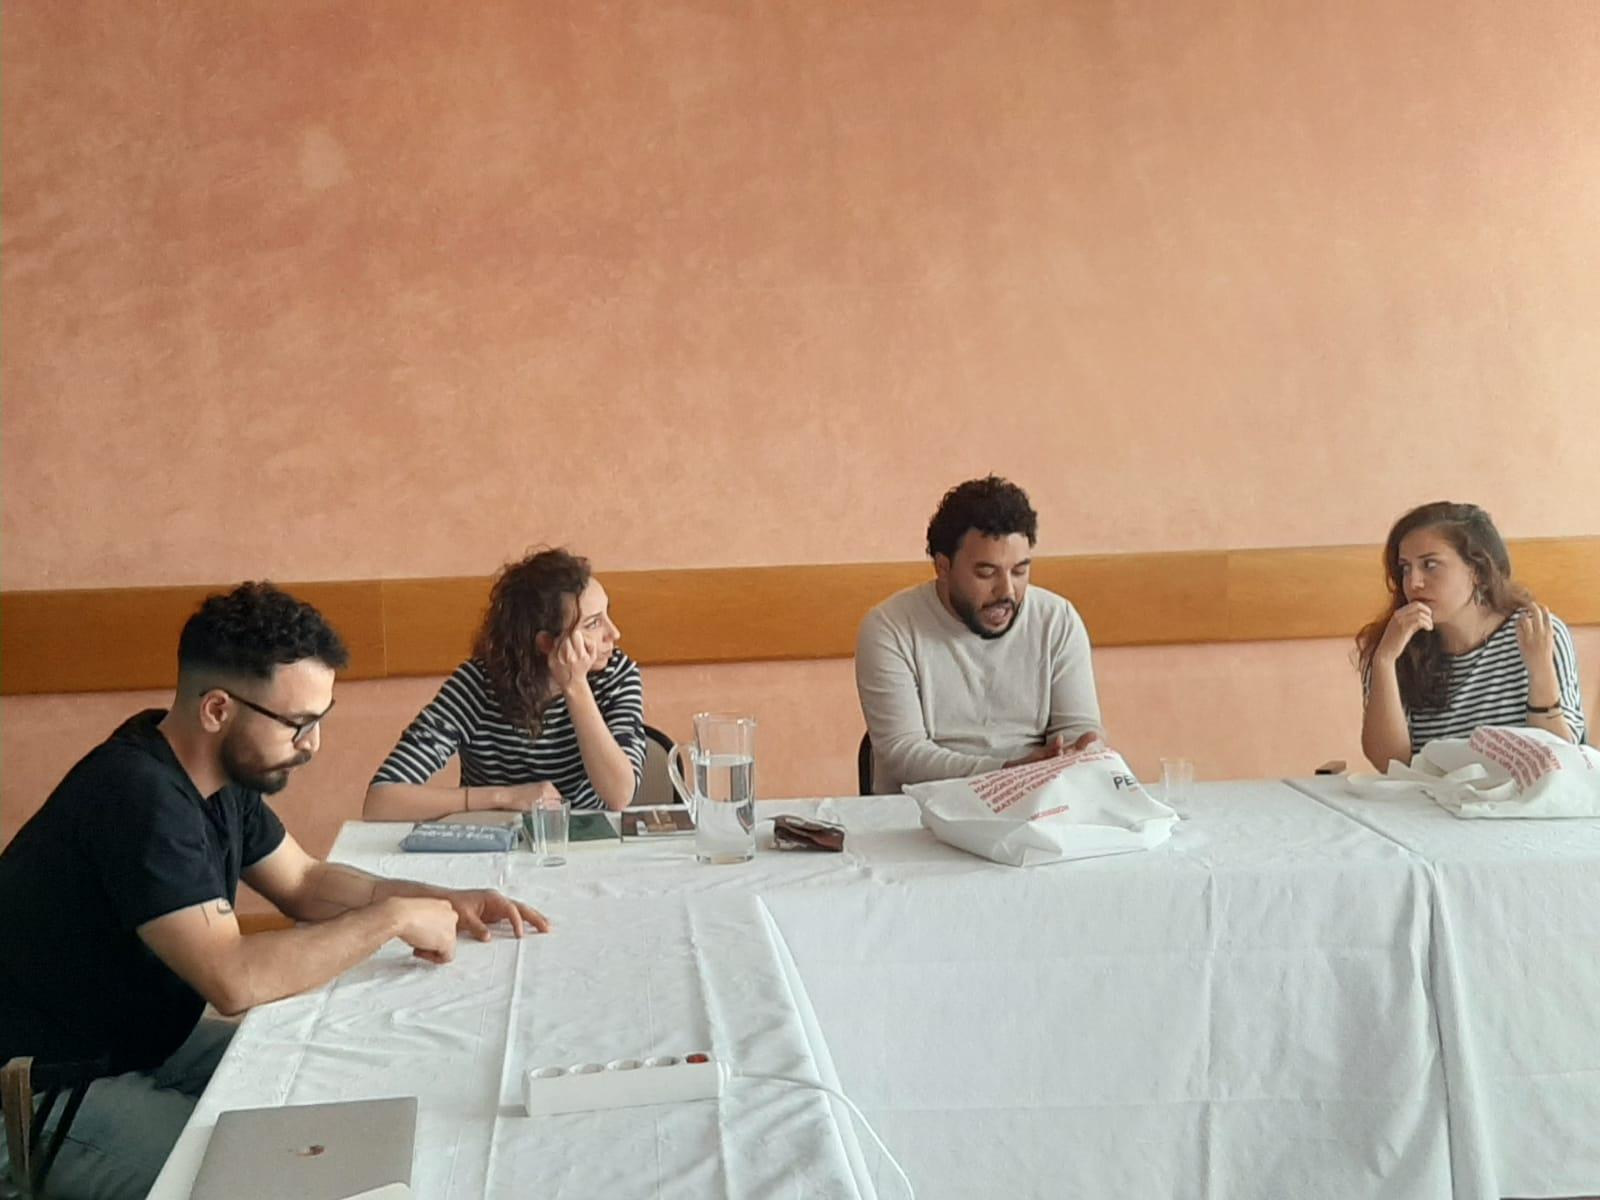 Primera sessió de treball dels joves dramaturgs catalans i palestins